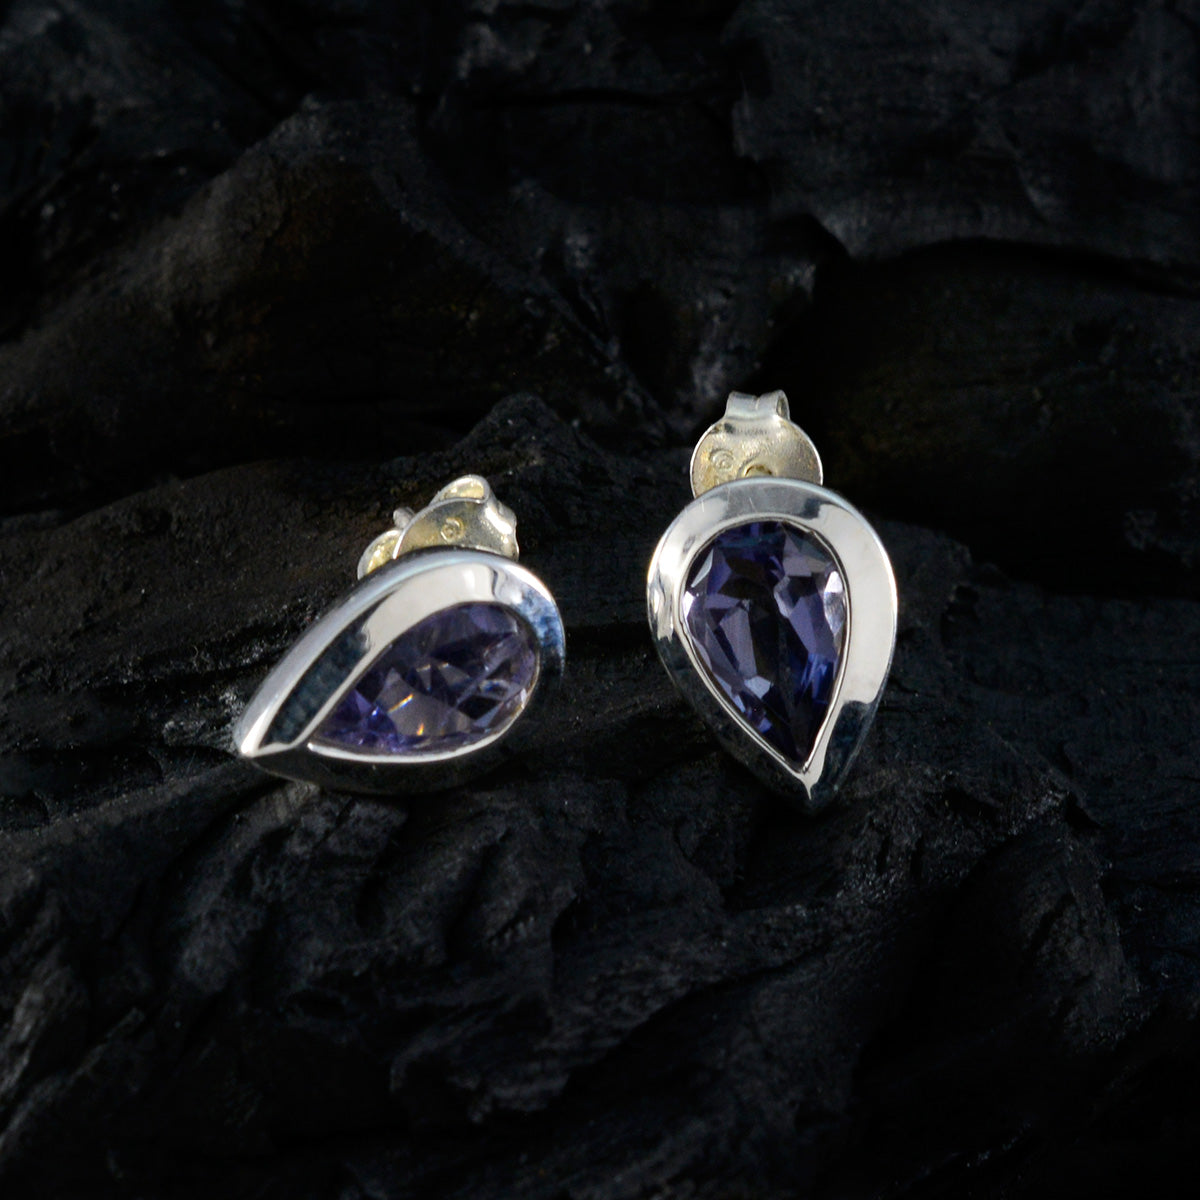 riyo fantasifulla sterling silver örhänge för kvinnlig iolit örhänge infattning blå örhänge örhänge